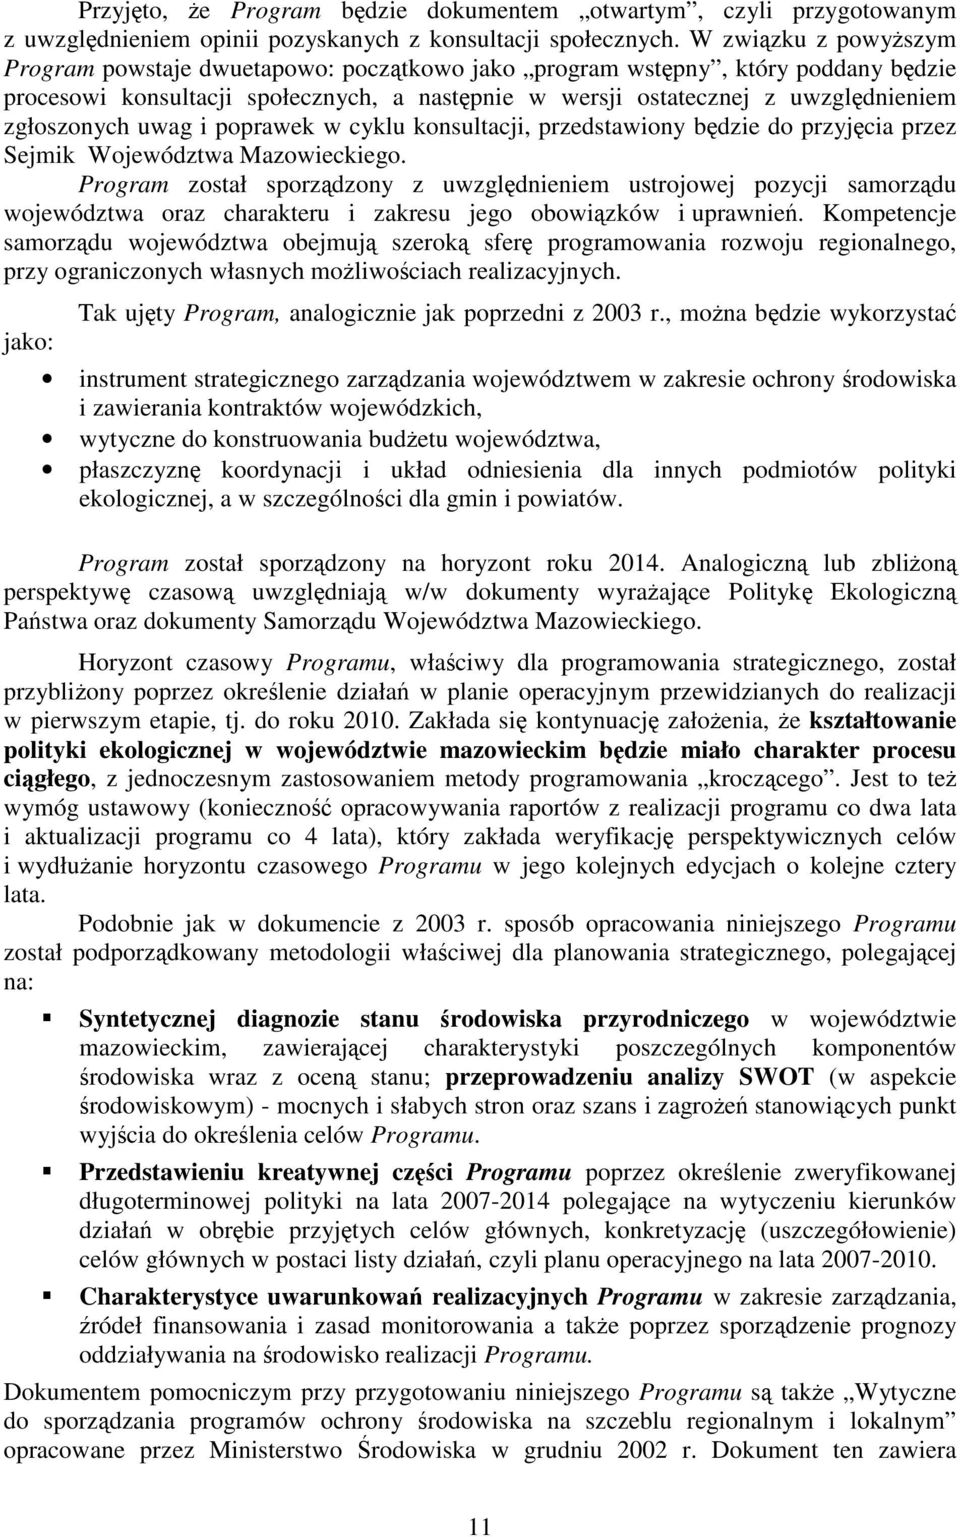 i poprawek w cyklu konsultacji, przedstawiony bdzie do przyjcia przez Sejmik Województwa Mazowieckiego.